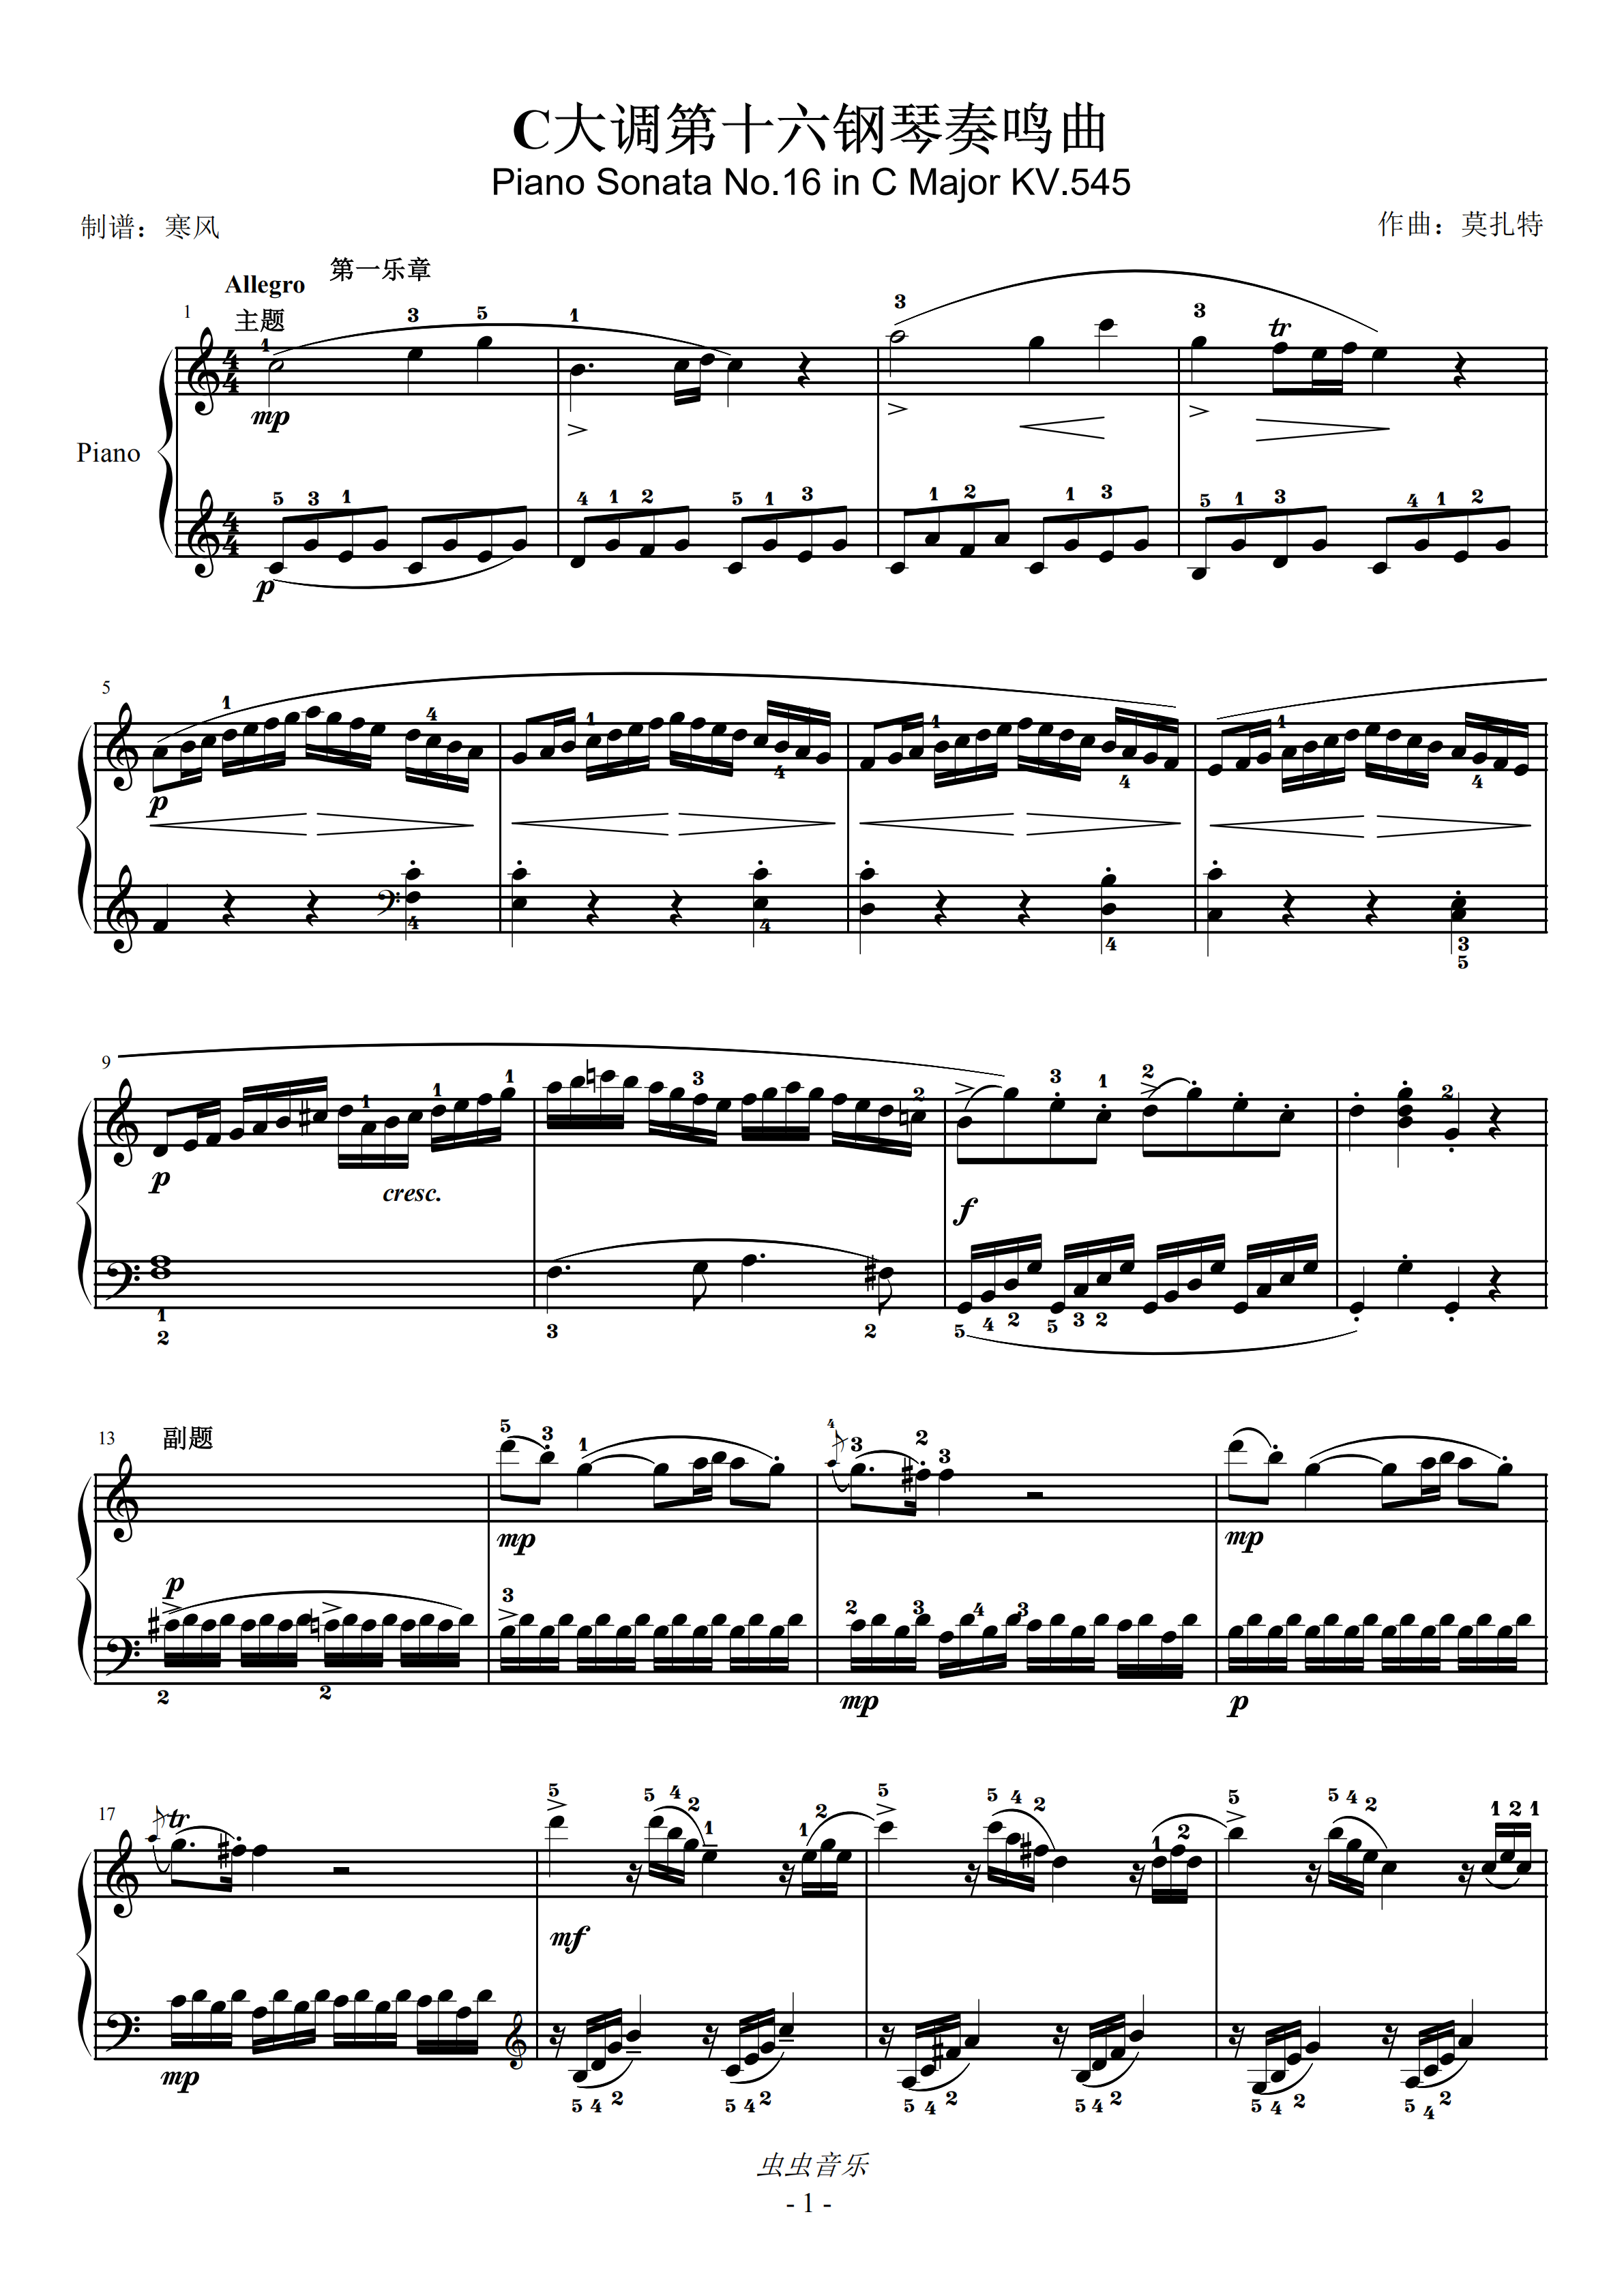 莫扎特c大调第十六钢琴奏鸣曲k545